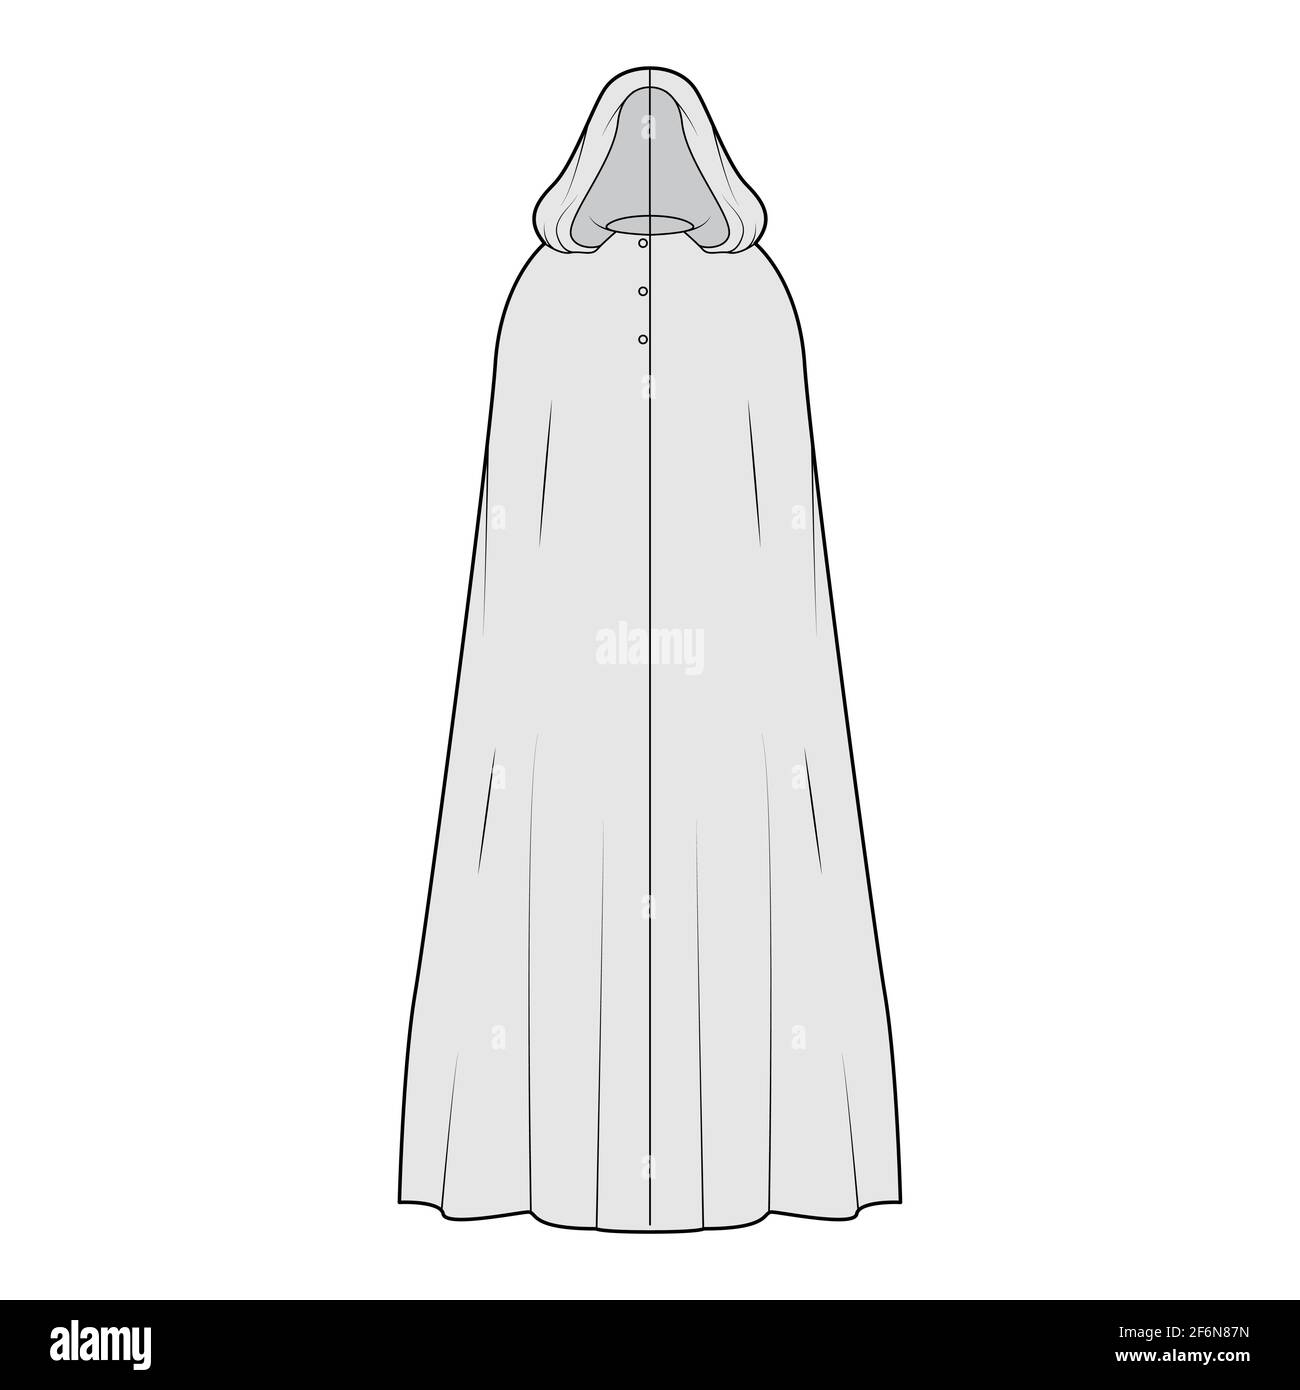 Manteau de manteau de manteau illustration technique de la mode avec  capuche, corps de trapèze grand, longueur maxi de plancher, fermeture par  bouton. Modèle de veste plate sur le devant, style gris.